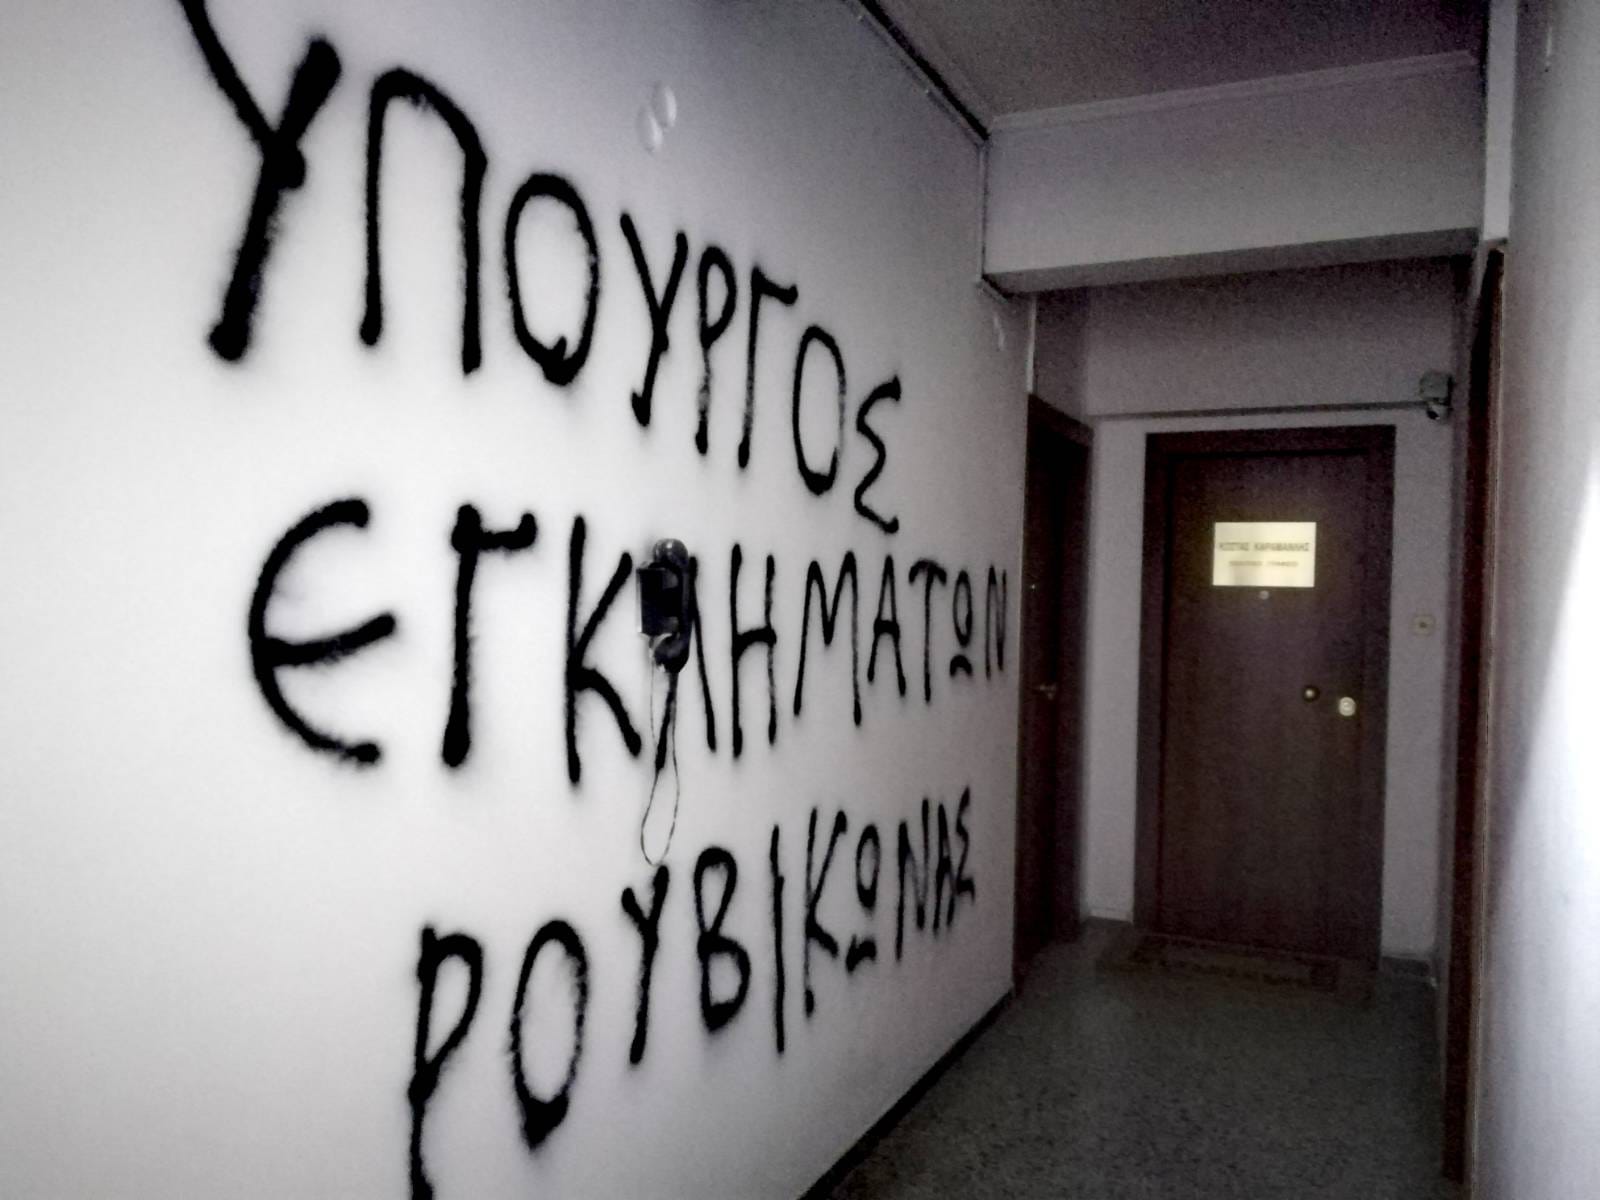 Ρουβίκωνας: Έβαψαν συνθήματα έξω από το πολιτικό γραφείο του Καραμανλή